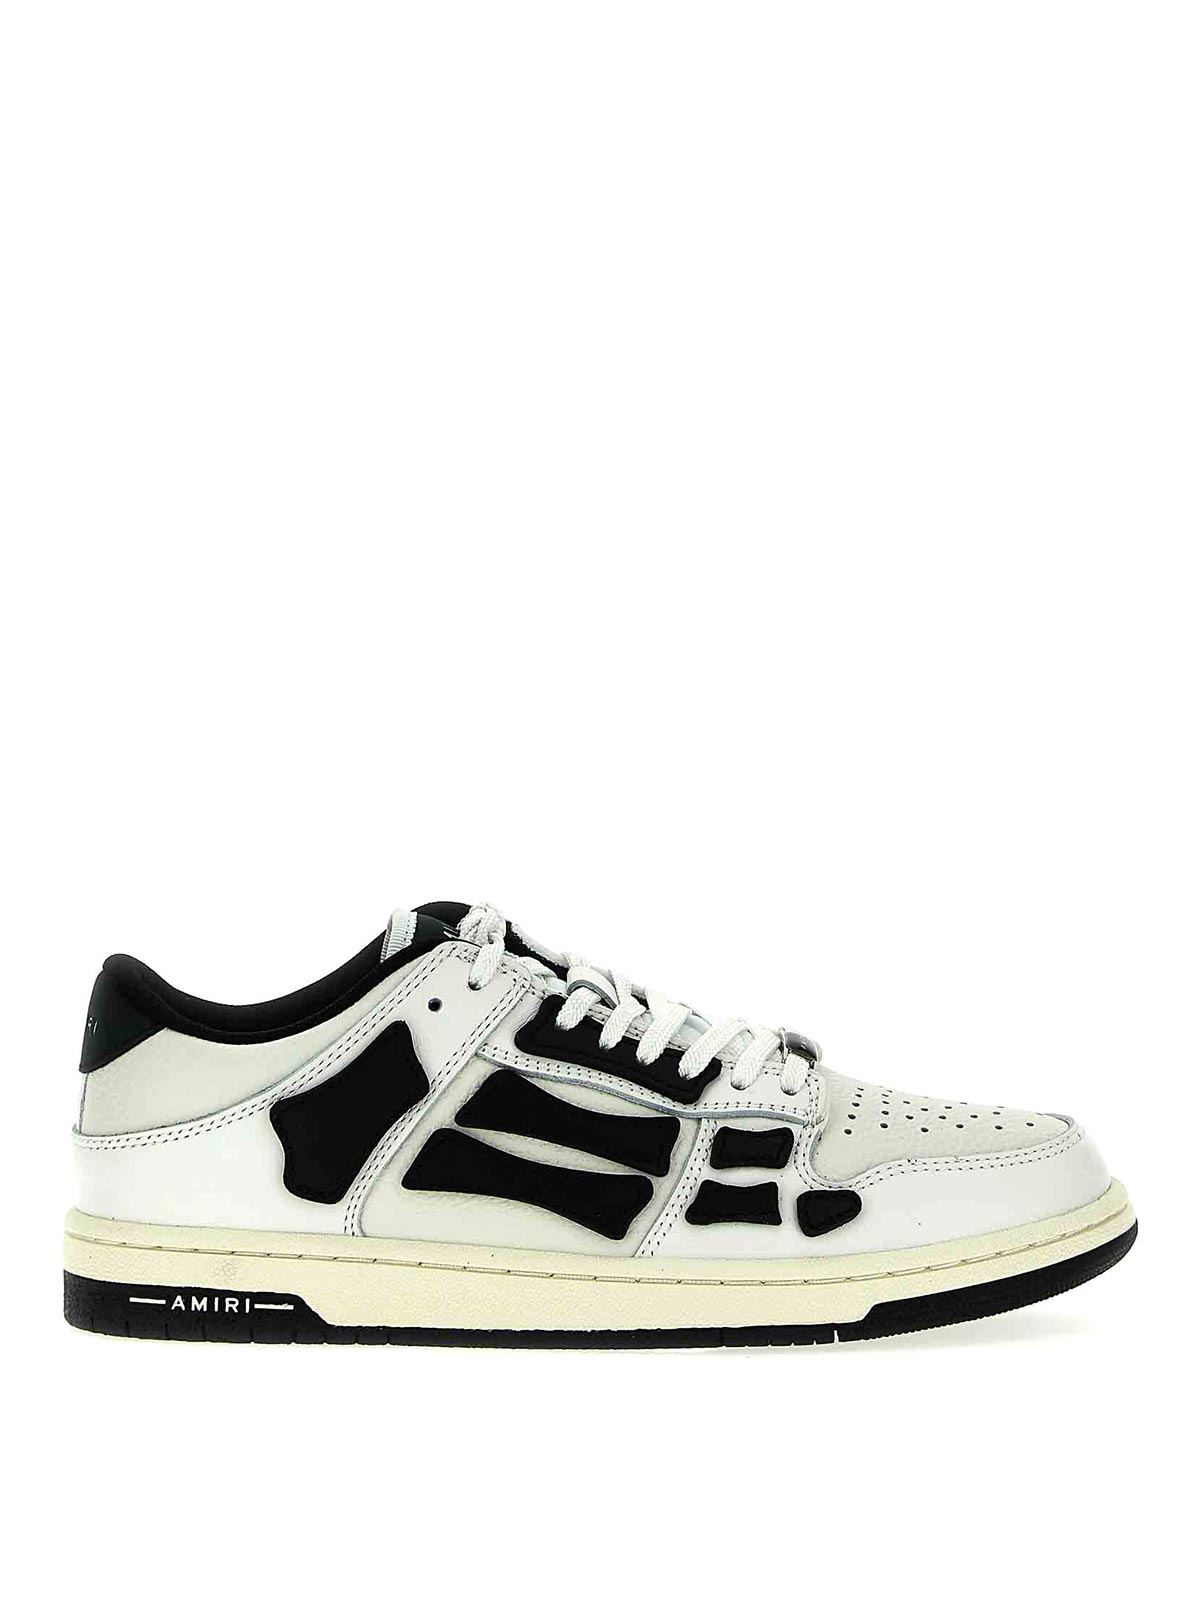 Shop Amiri Skel Top Hi Sneakers In White